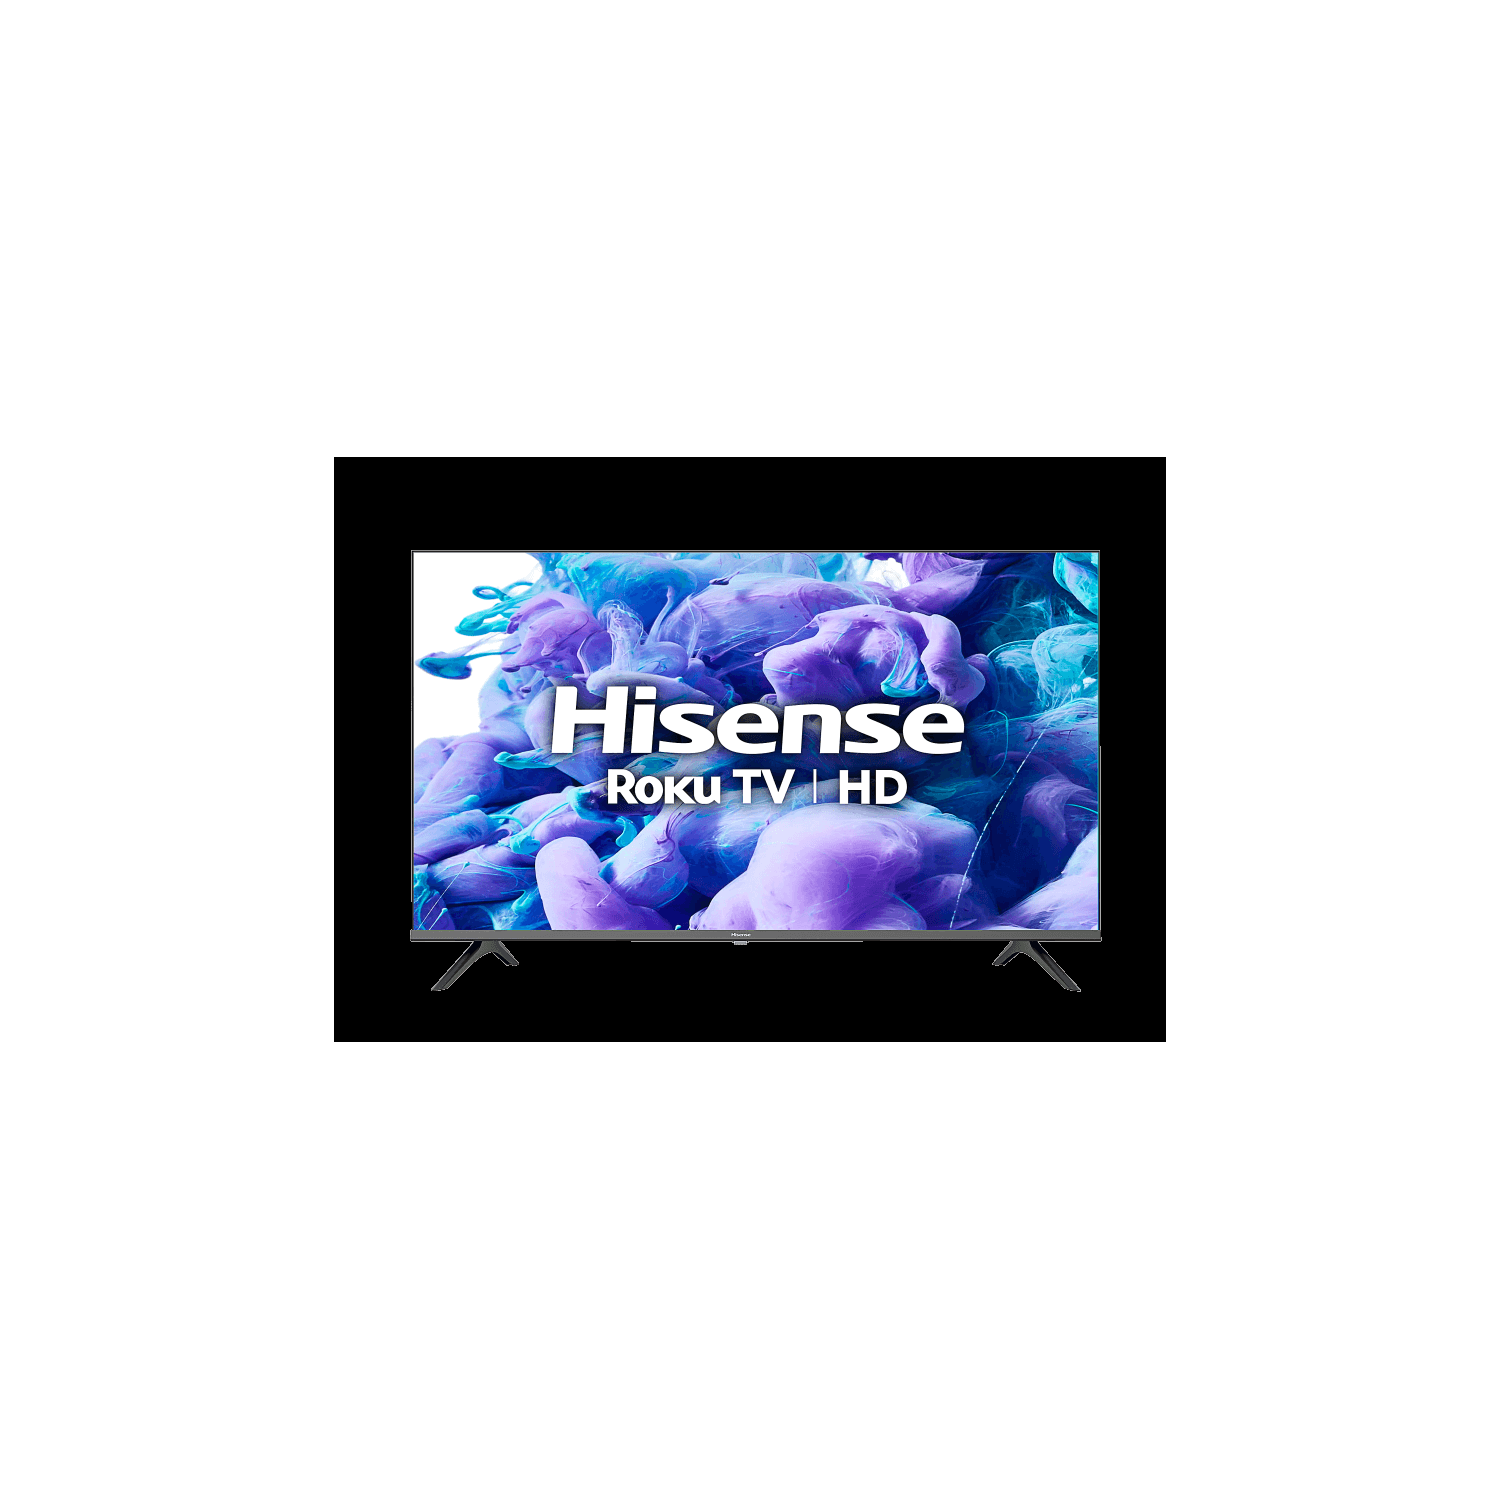 Hisense DEL Smart Television 32" (32H41G) - Open Box Like New (Condition 10/10)